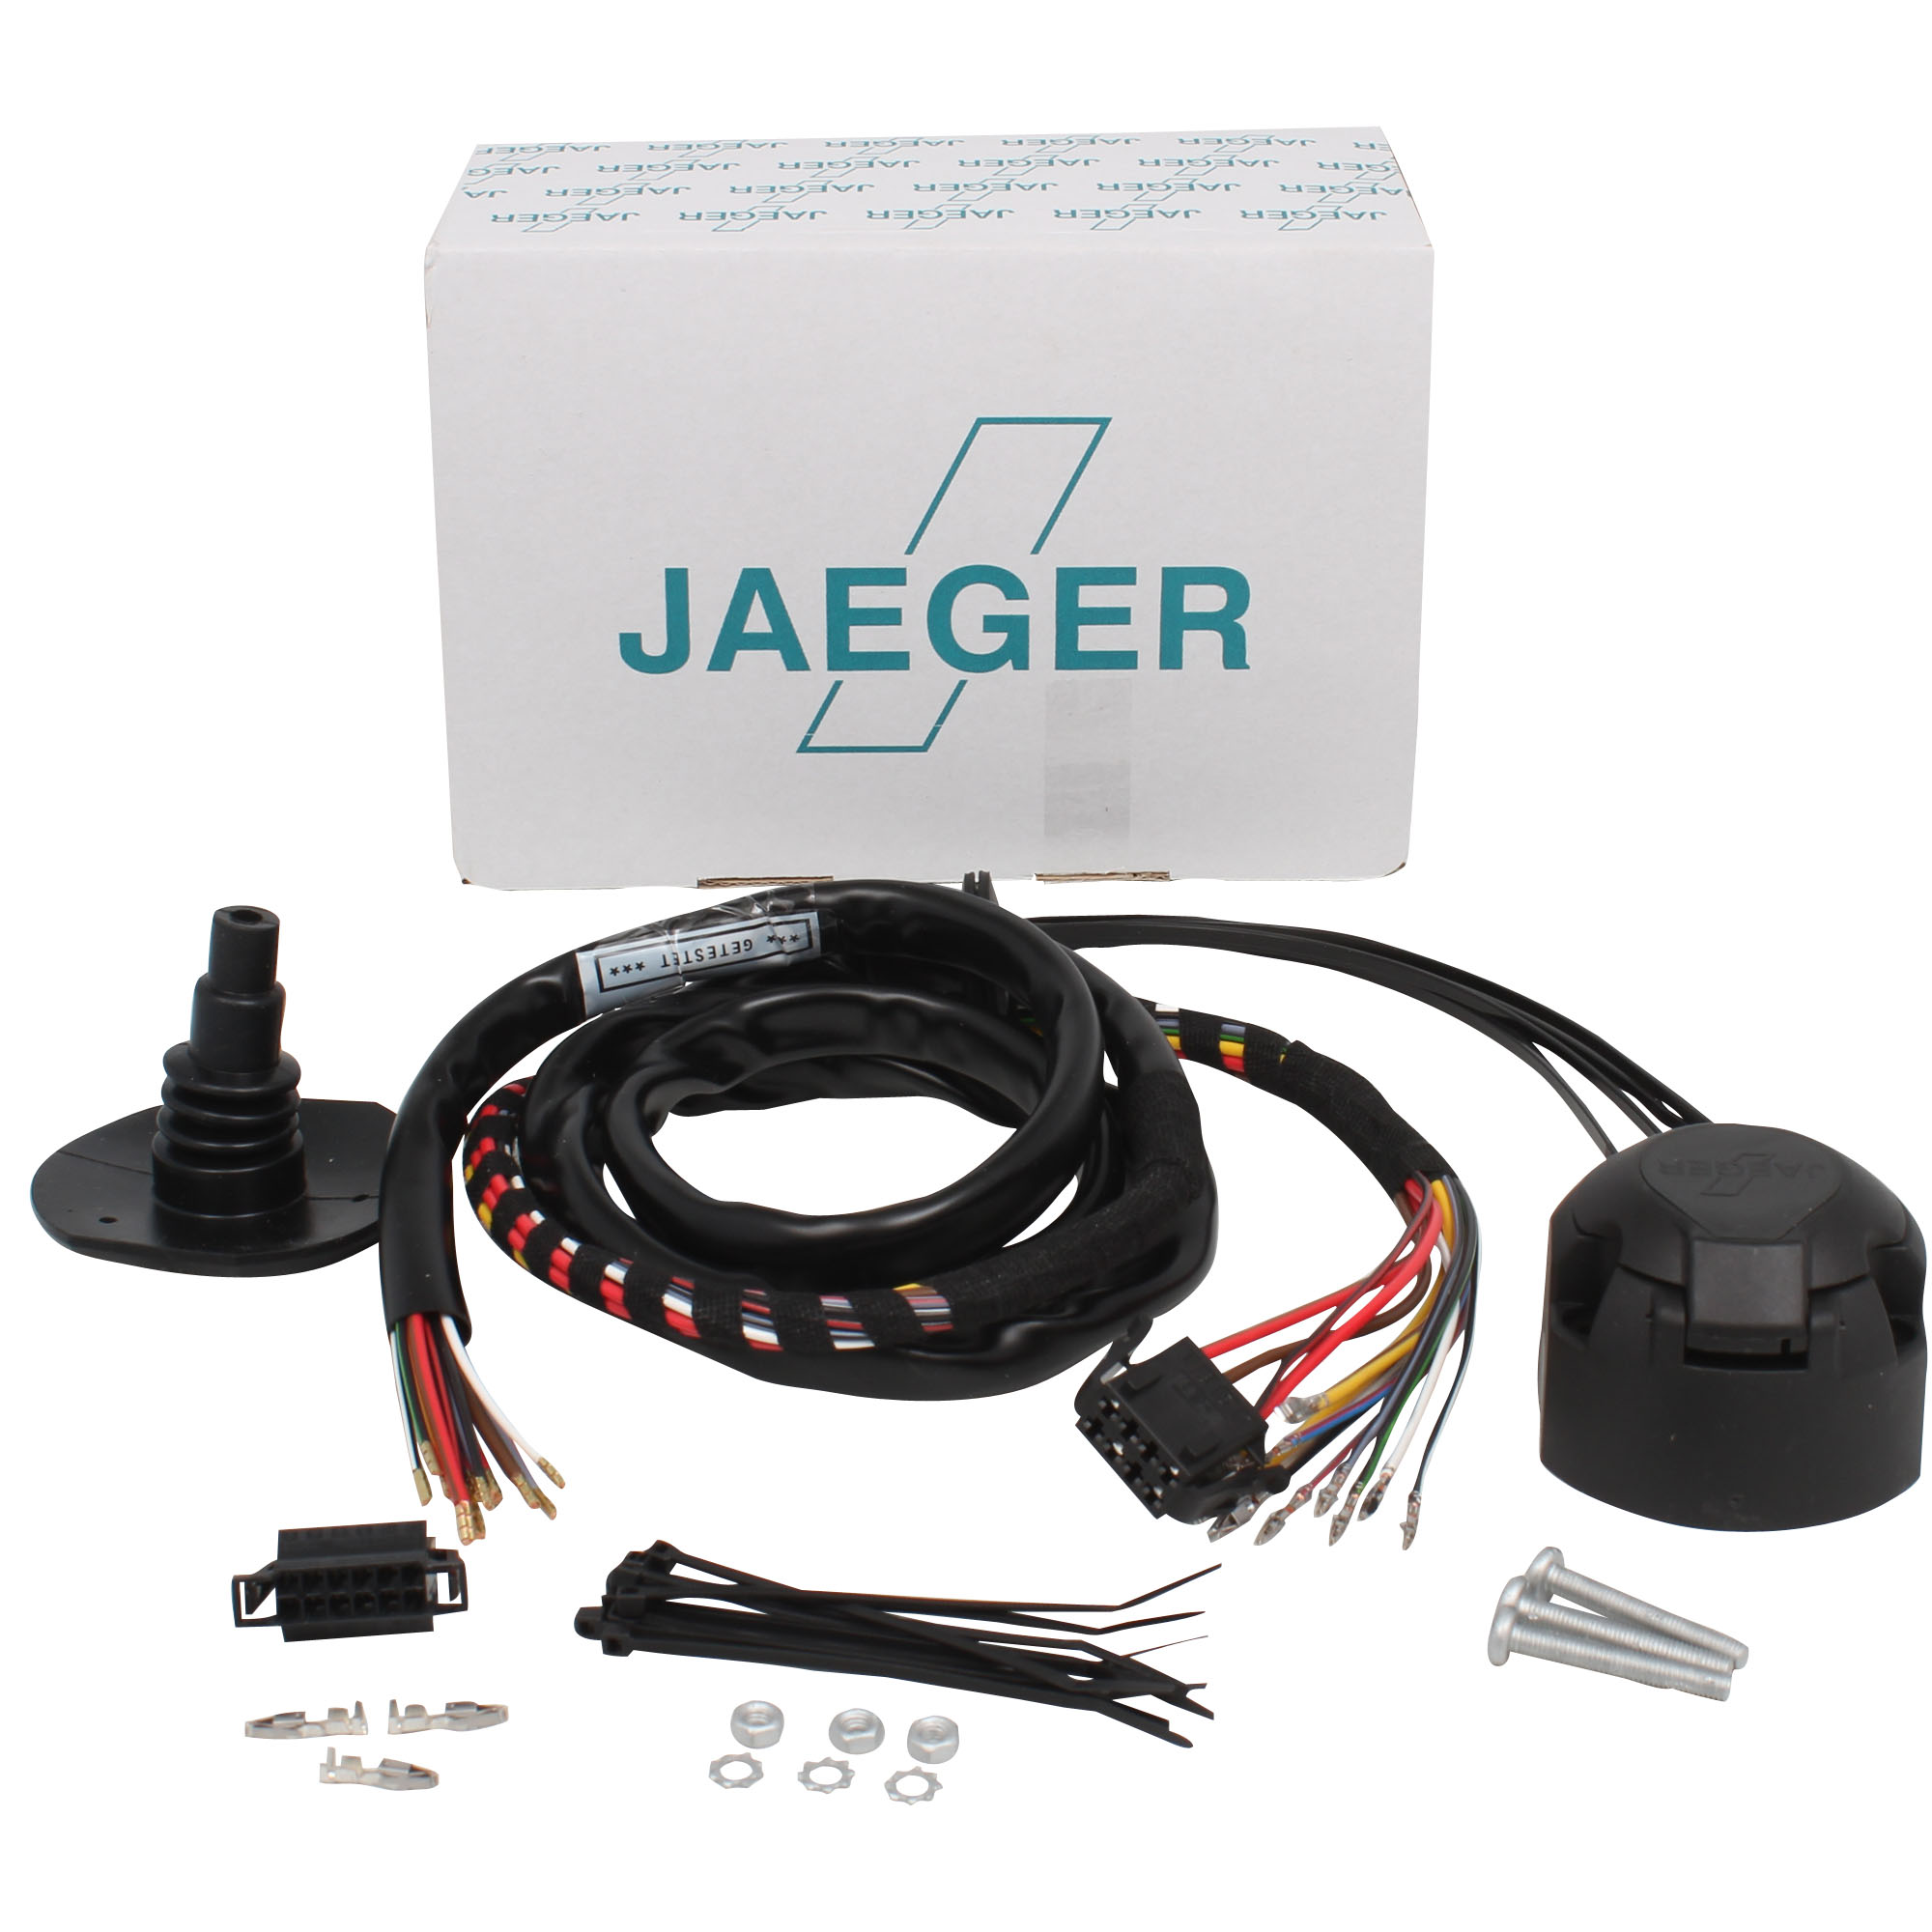 jaeger kabelset bmw x5 g05 speciale kabelset plug en play